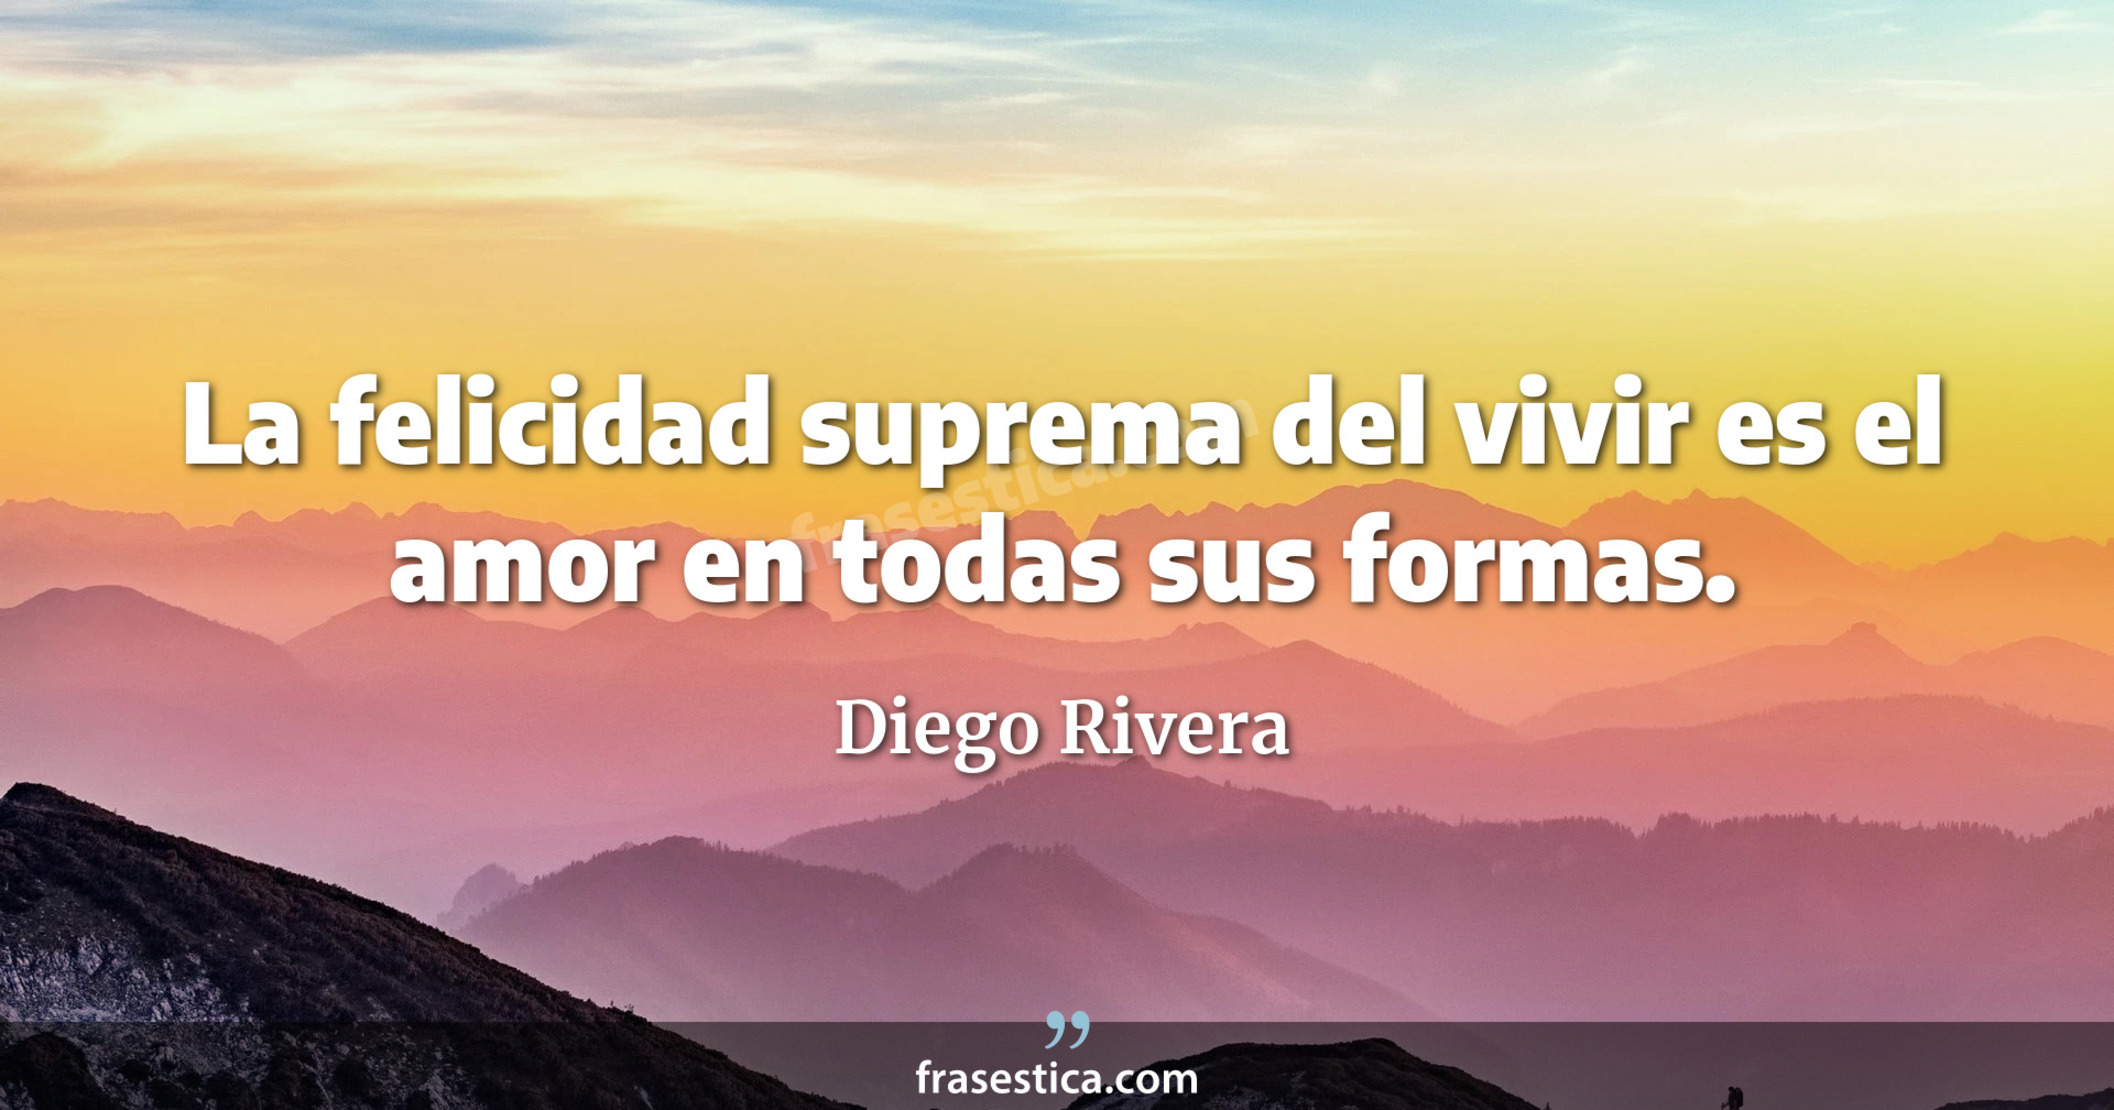 La felicidad suprema del vivir es el amor en todas sus formas. - Diego Rivera